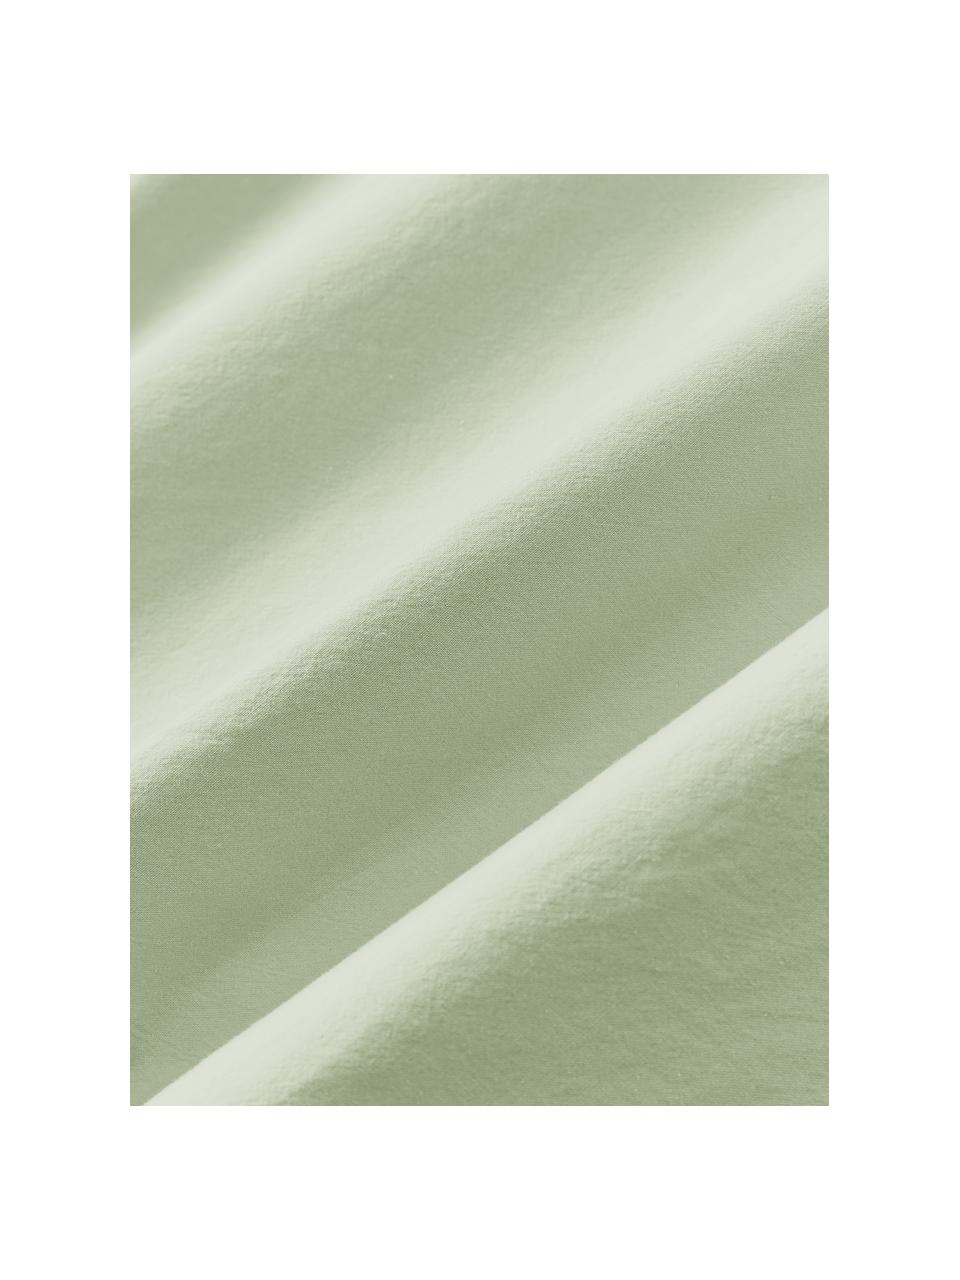 Bavlnená obliečka na vankúš Darlyn, 100 %  bavlna
Hustota vlákna 150 TC, štandard kvalita

Posteľná bielizeň z bavlny je príjemná na dotyk, dobre absorbuje vlhkosť a je vhodná pre alergikov

Látka bola podrobená špeciálnemu procesu „Softwash”, ktorý zabezpečuje nepravidelný vypraný vzhľad, je mäkká, pružná a má prirodzený krčivý vzhľad, ktorý nevyžaduje žehlenie a pôsobí útulne

Materiál použitý v tomto produkte bol testovaný na škodlivé látky a certifikovaný podľa STANDARD 100 od OEKO-TEX®, 4265CIT, CITEVE., Šalviovozelená, Š 40 x D 80 cm